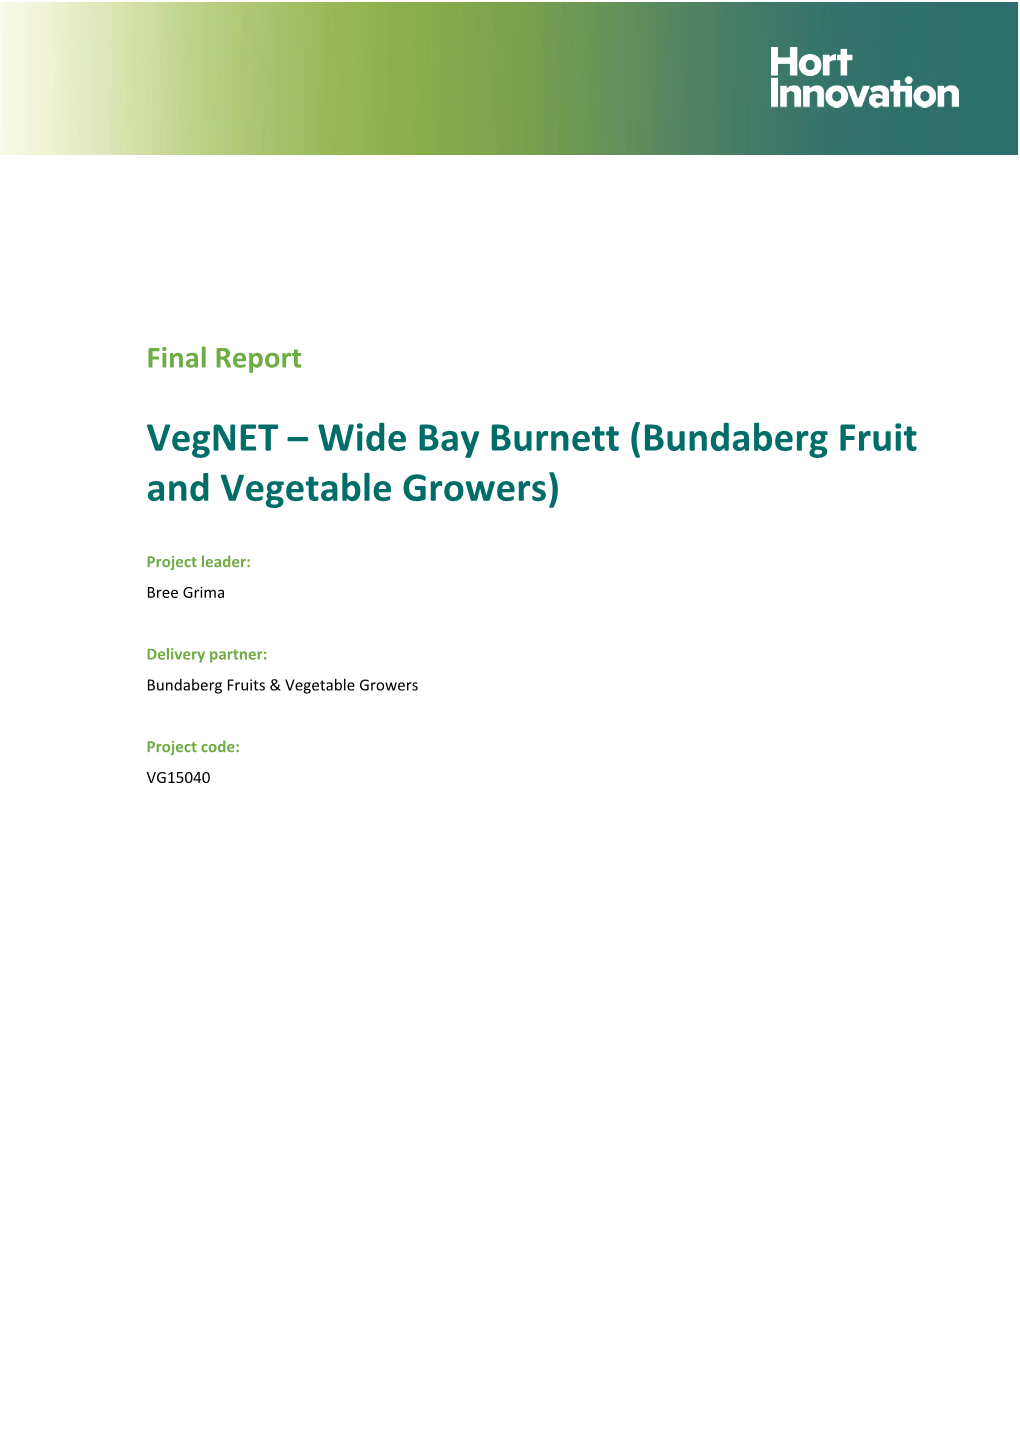 Wide Bay Burnett (Bundaberg Fruit and Vegetable Growers)